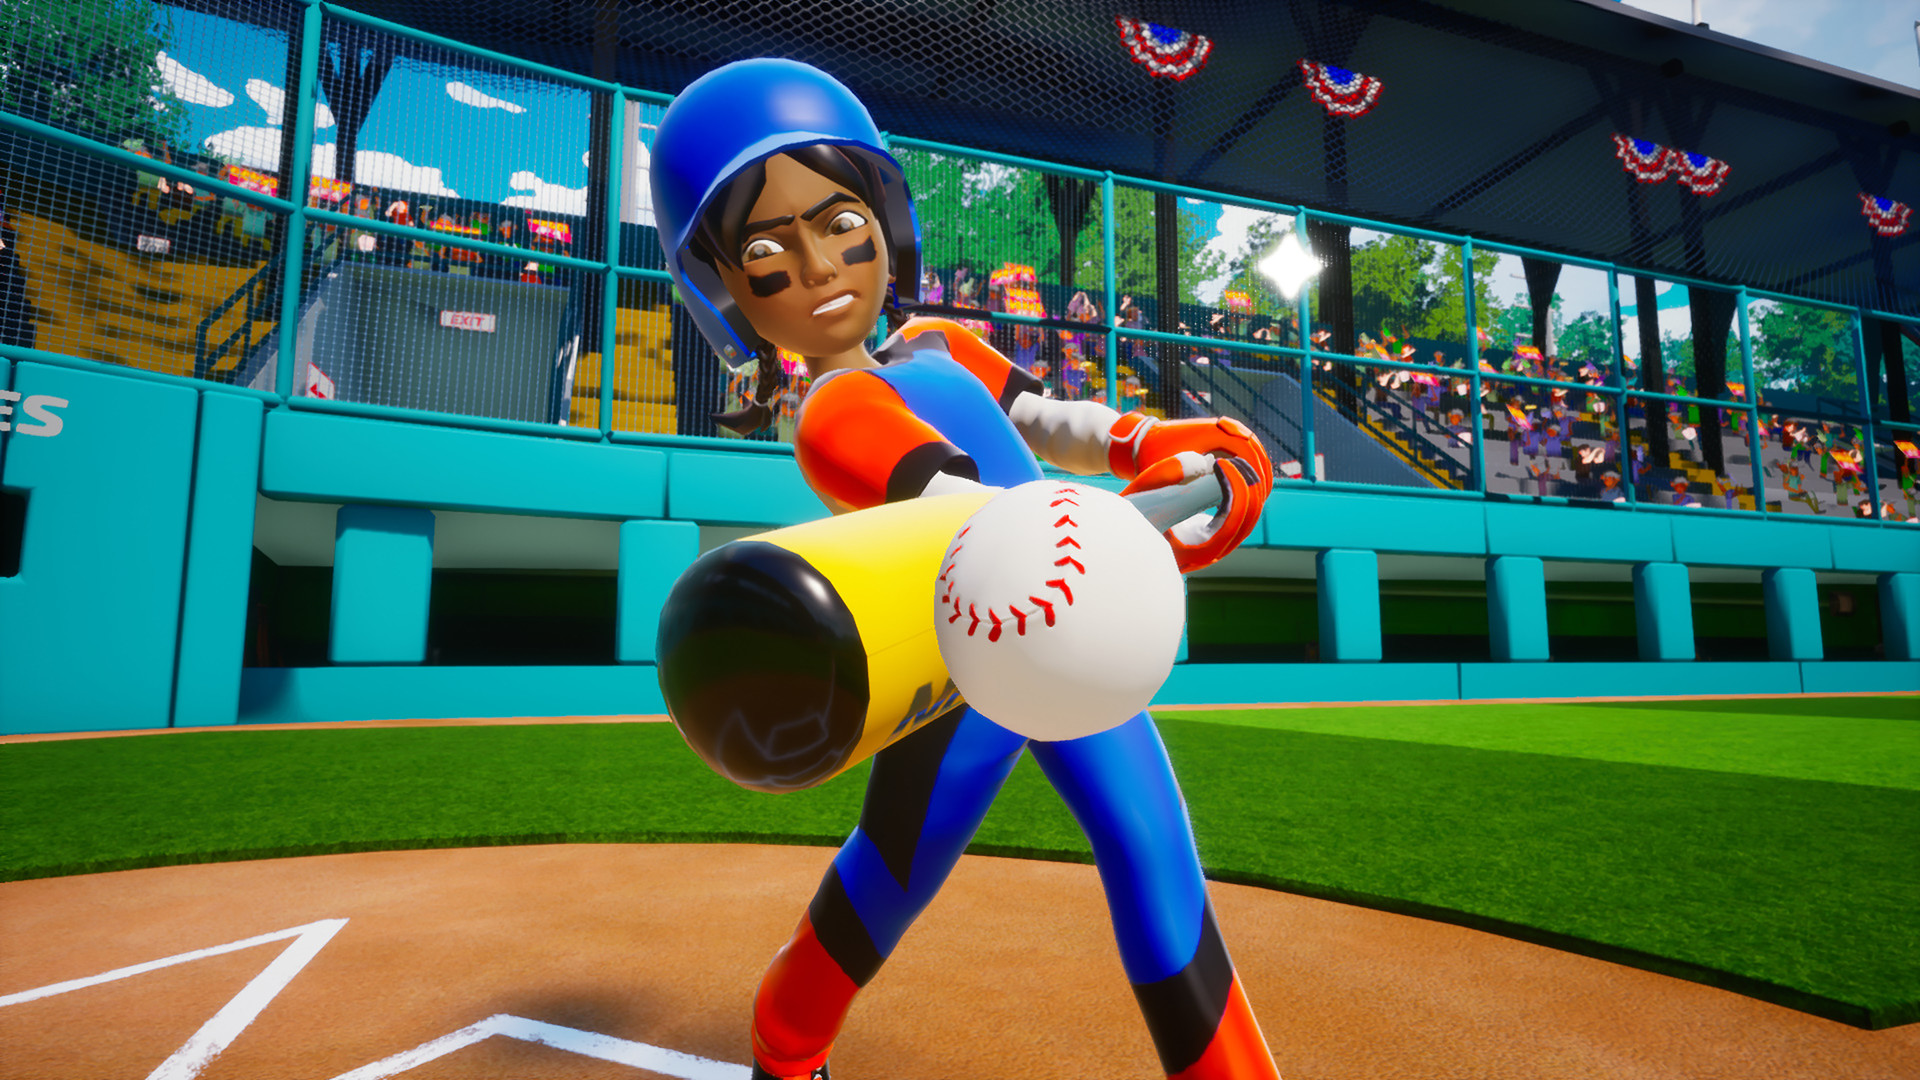 [$ 0.59] Little League World Series Baseball 2022 Steam CD Key